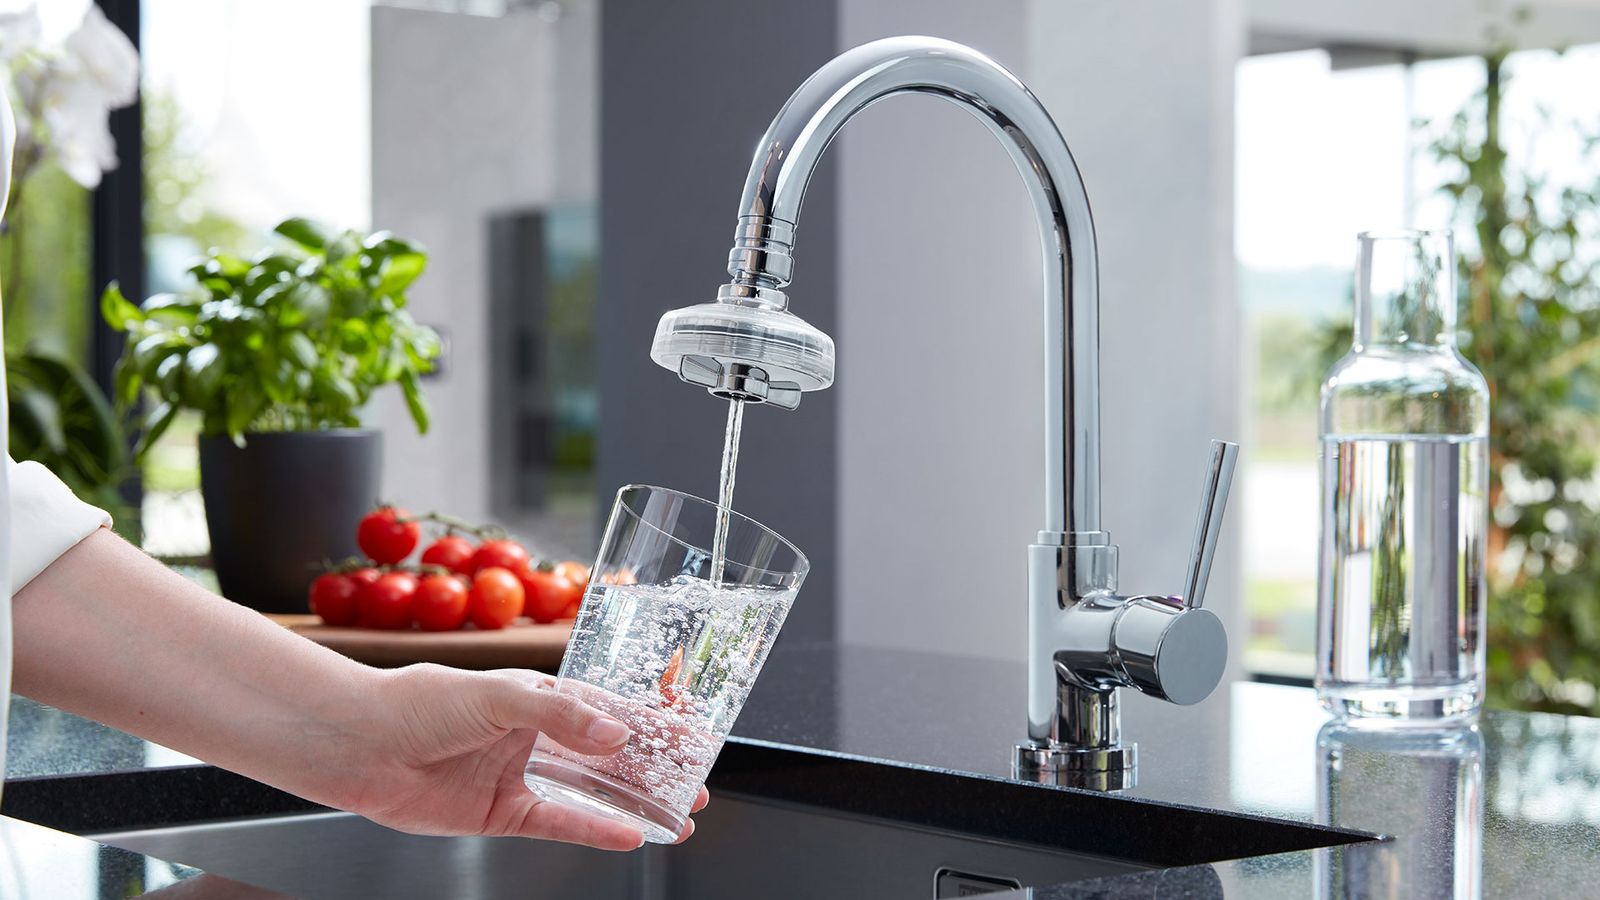 Preiswerter Wasserfilter für die Küche